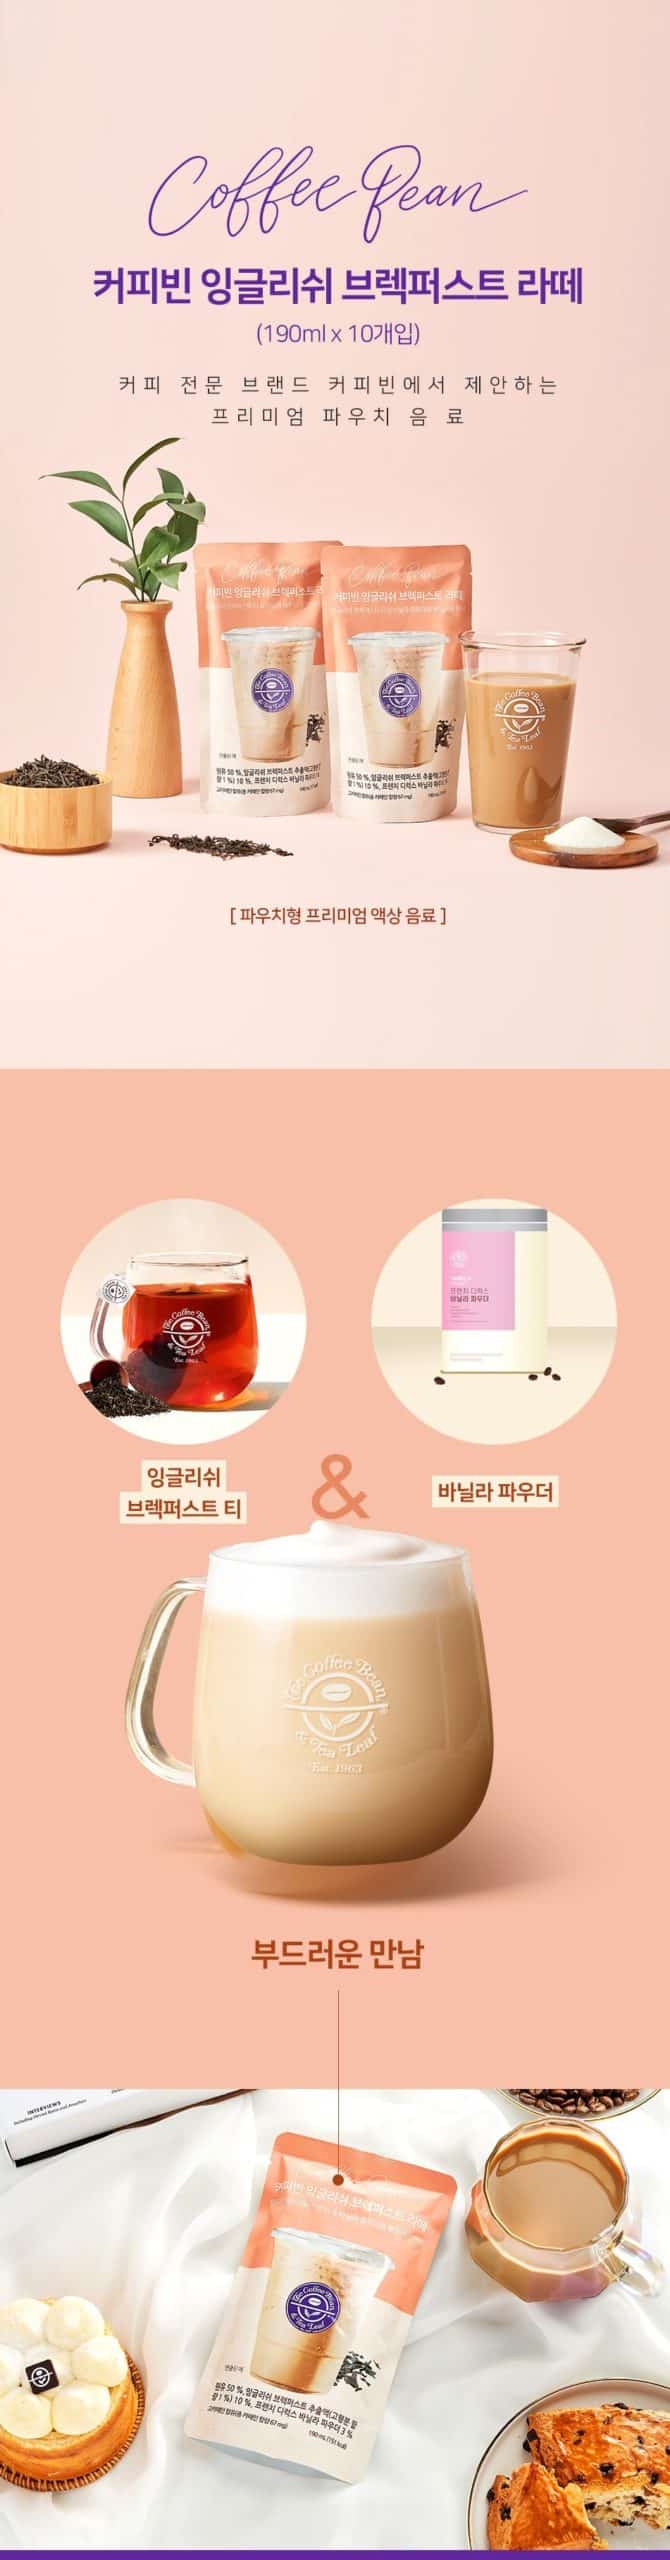 韓國食品-[CoffeeBean] 英式餐茶拿鐵 190ml